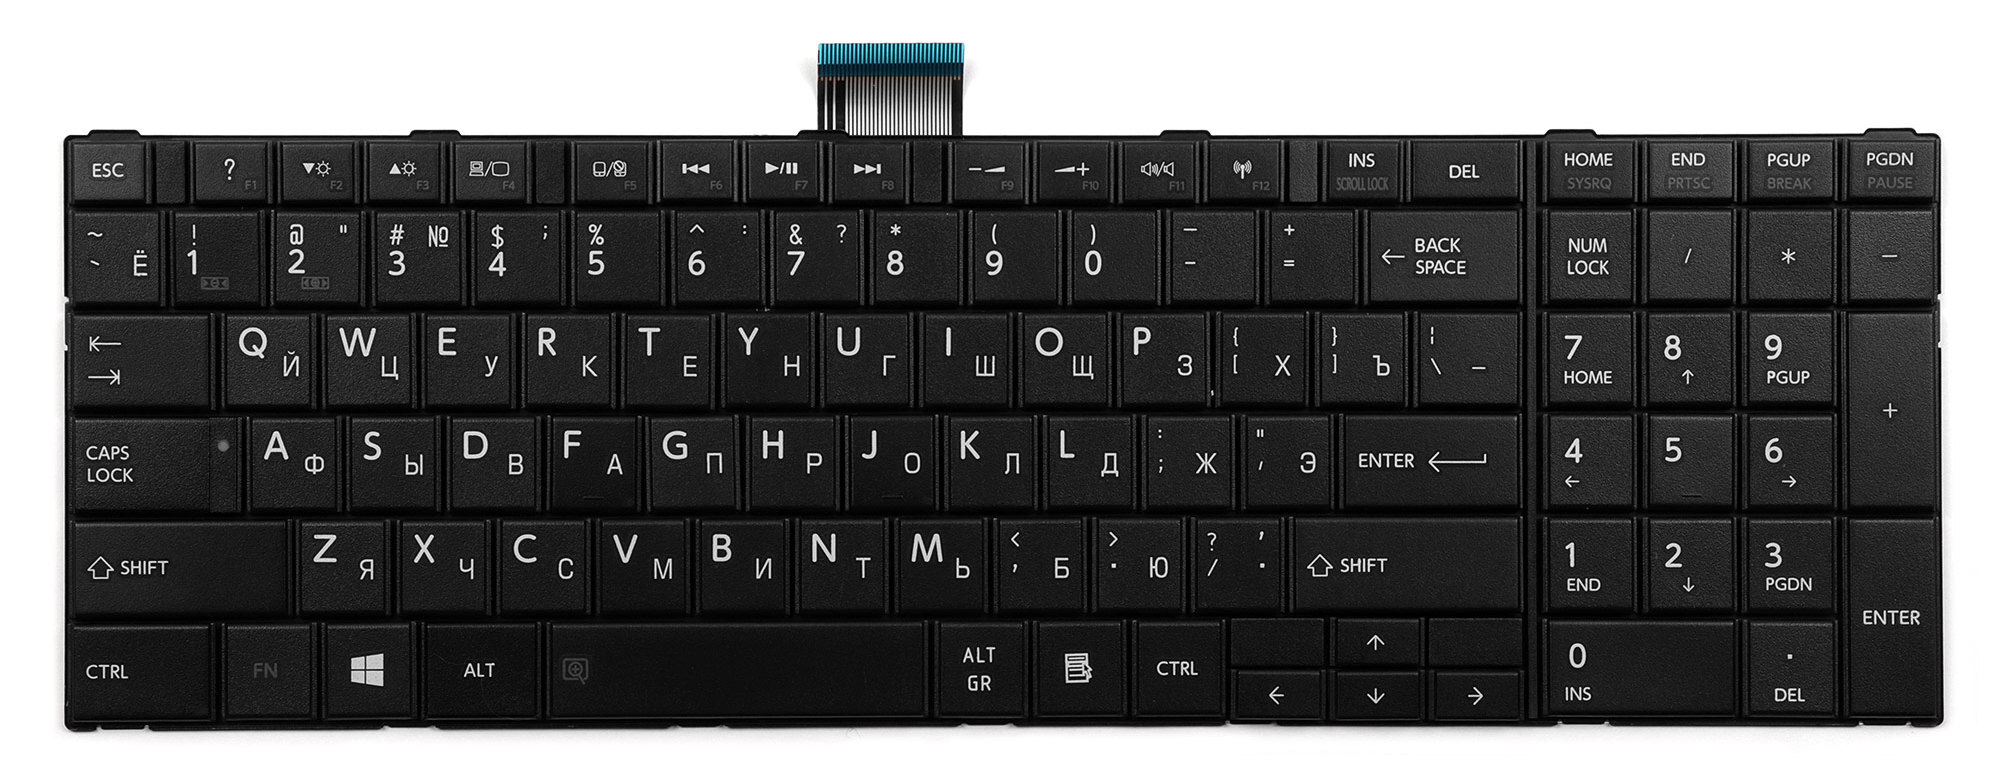 Acer Aspire 7730 клавиатура